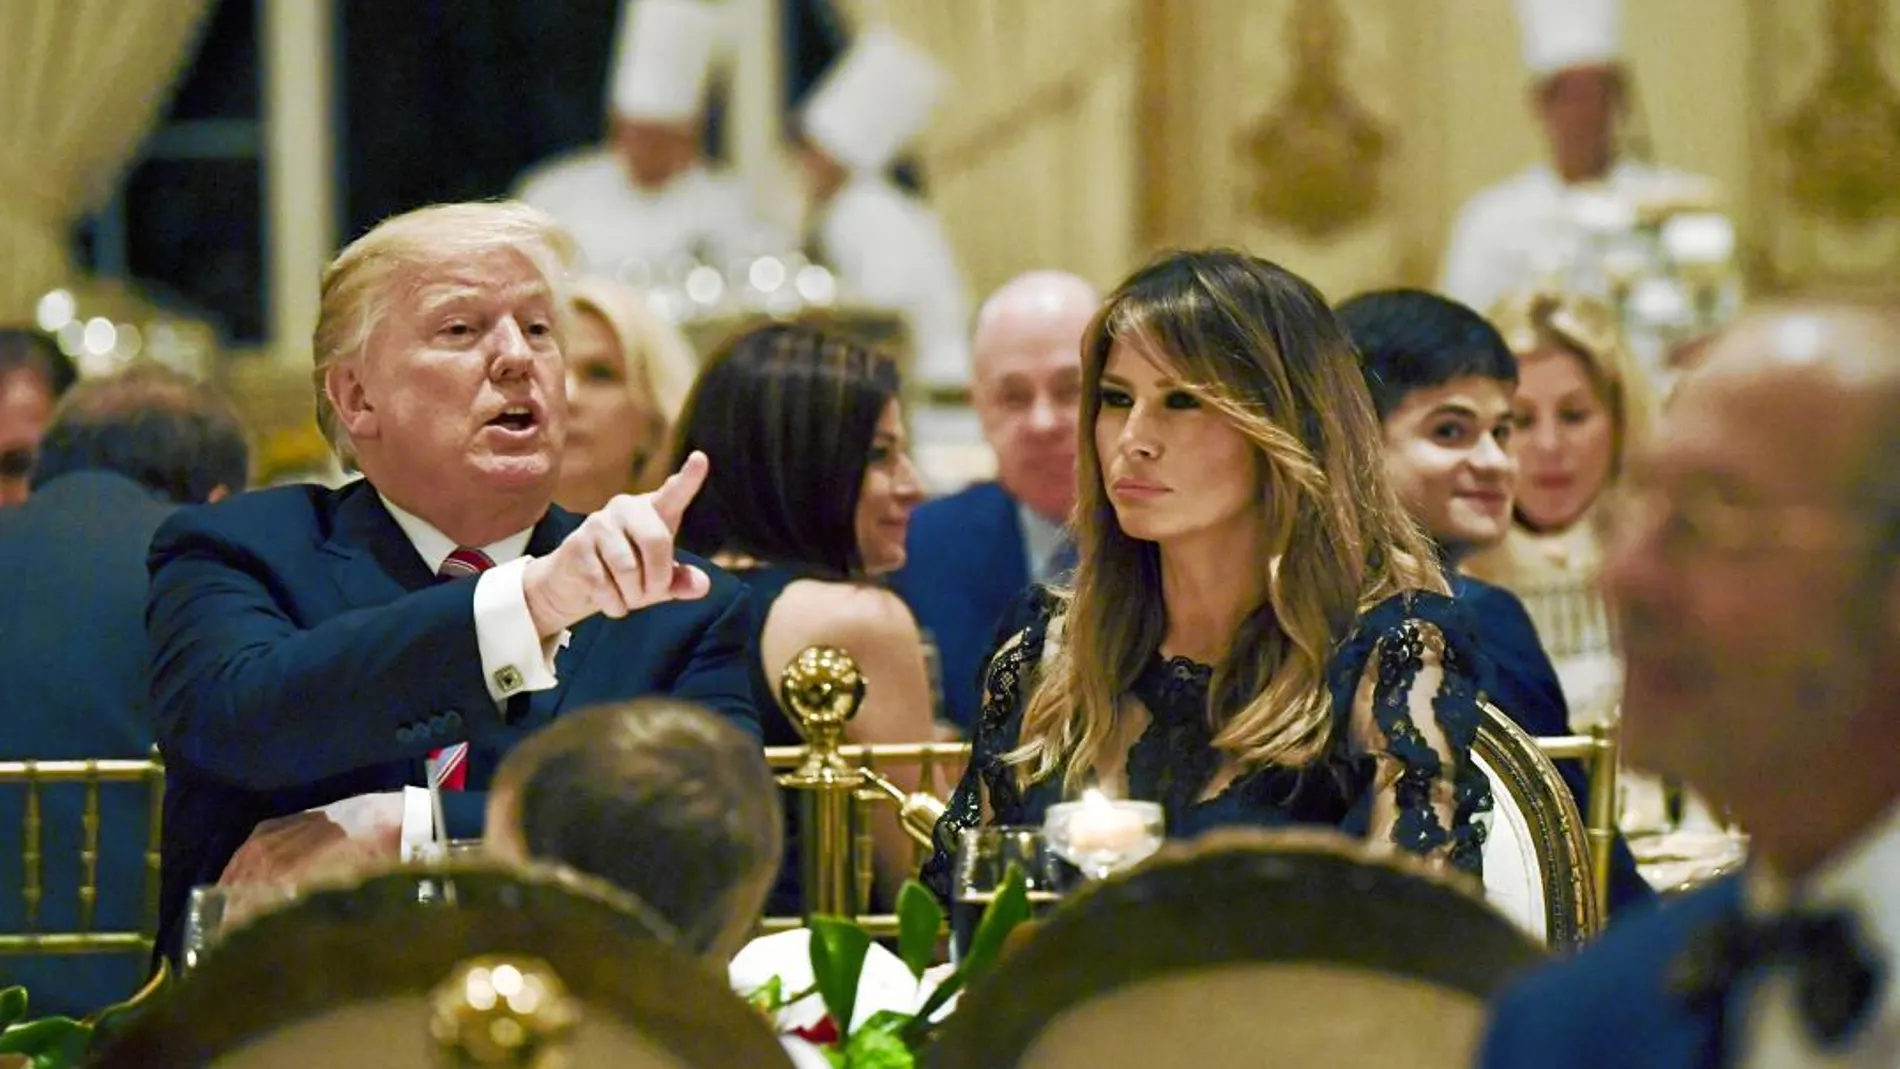 El presidente Trump y su esposa Melania, durante la cena de Acción de Gracias que tuvo lugar la noche del jueves en su propiedad de Mar-a-Lago en Palm Beach (Florida)